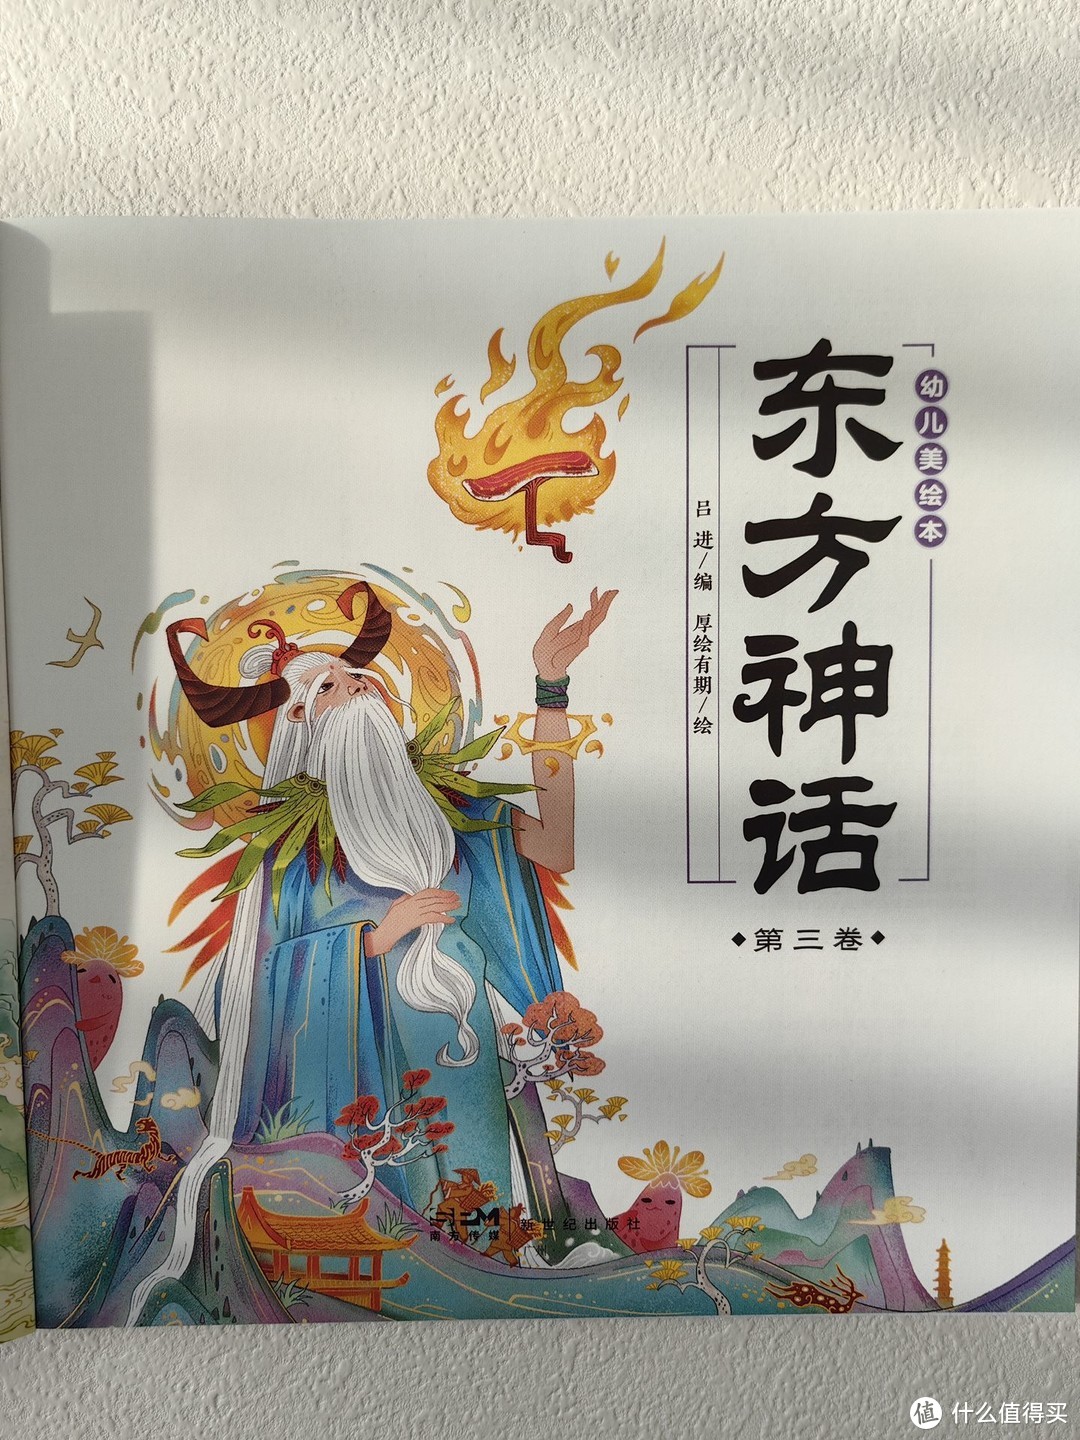 中国小朋友都应该读一读这套正宗的东方神话故事